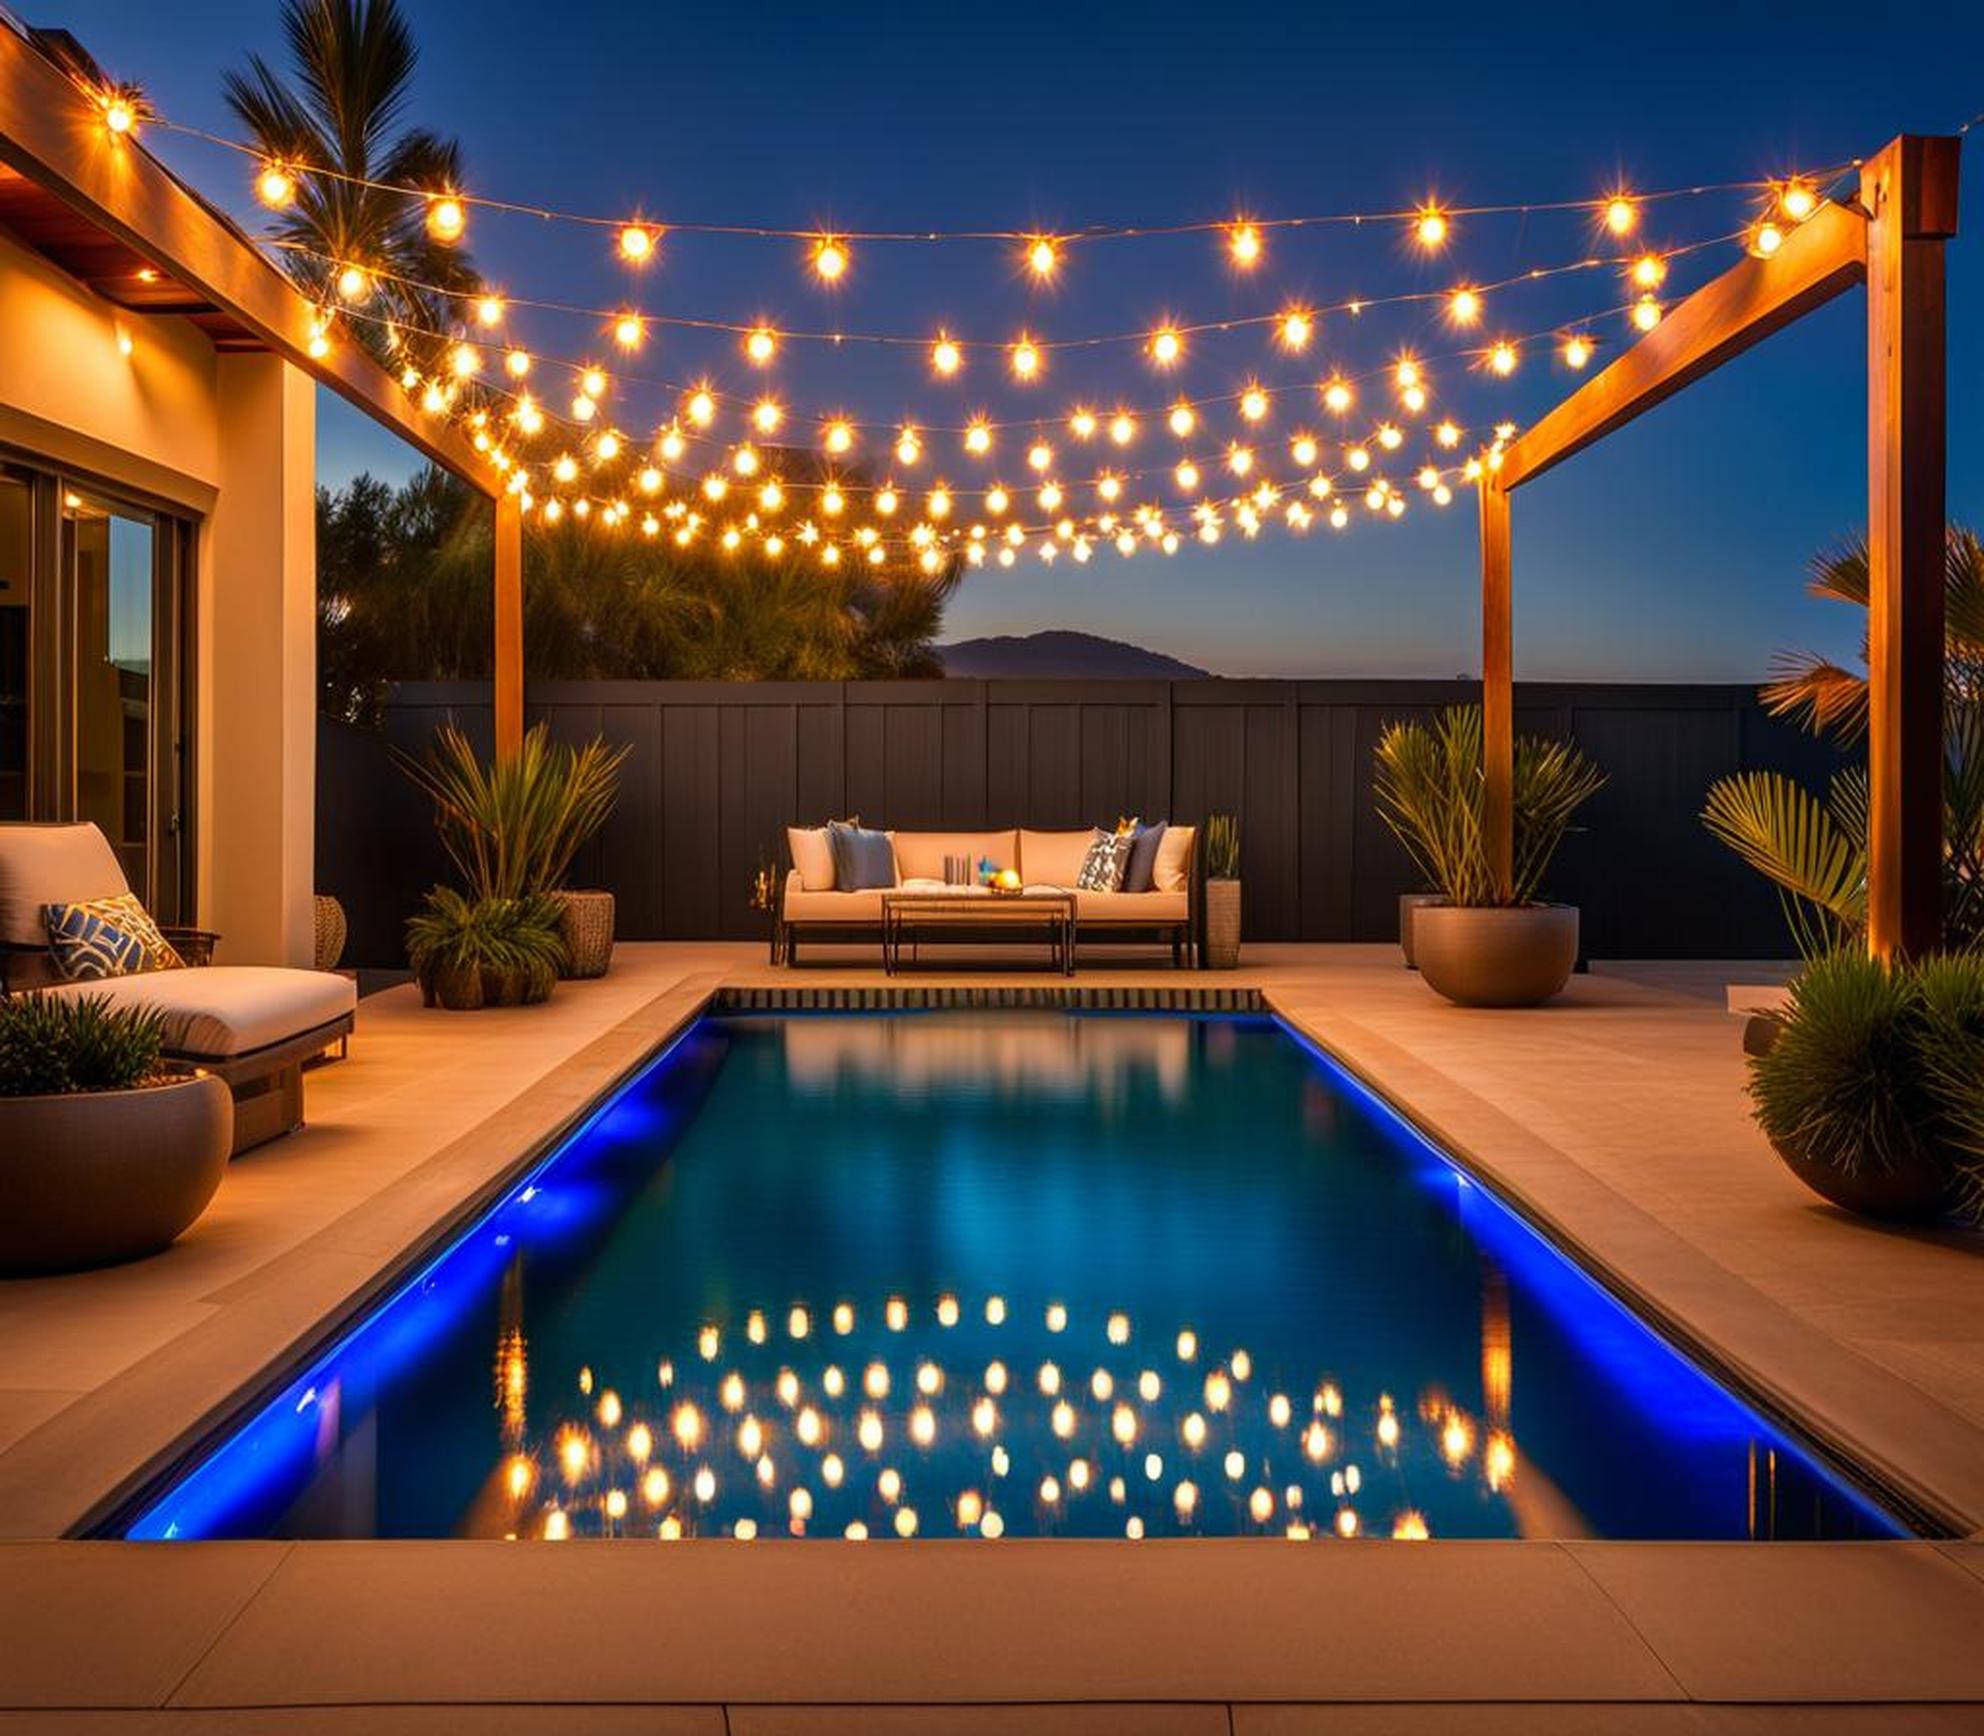 stringing lights over a pool